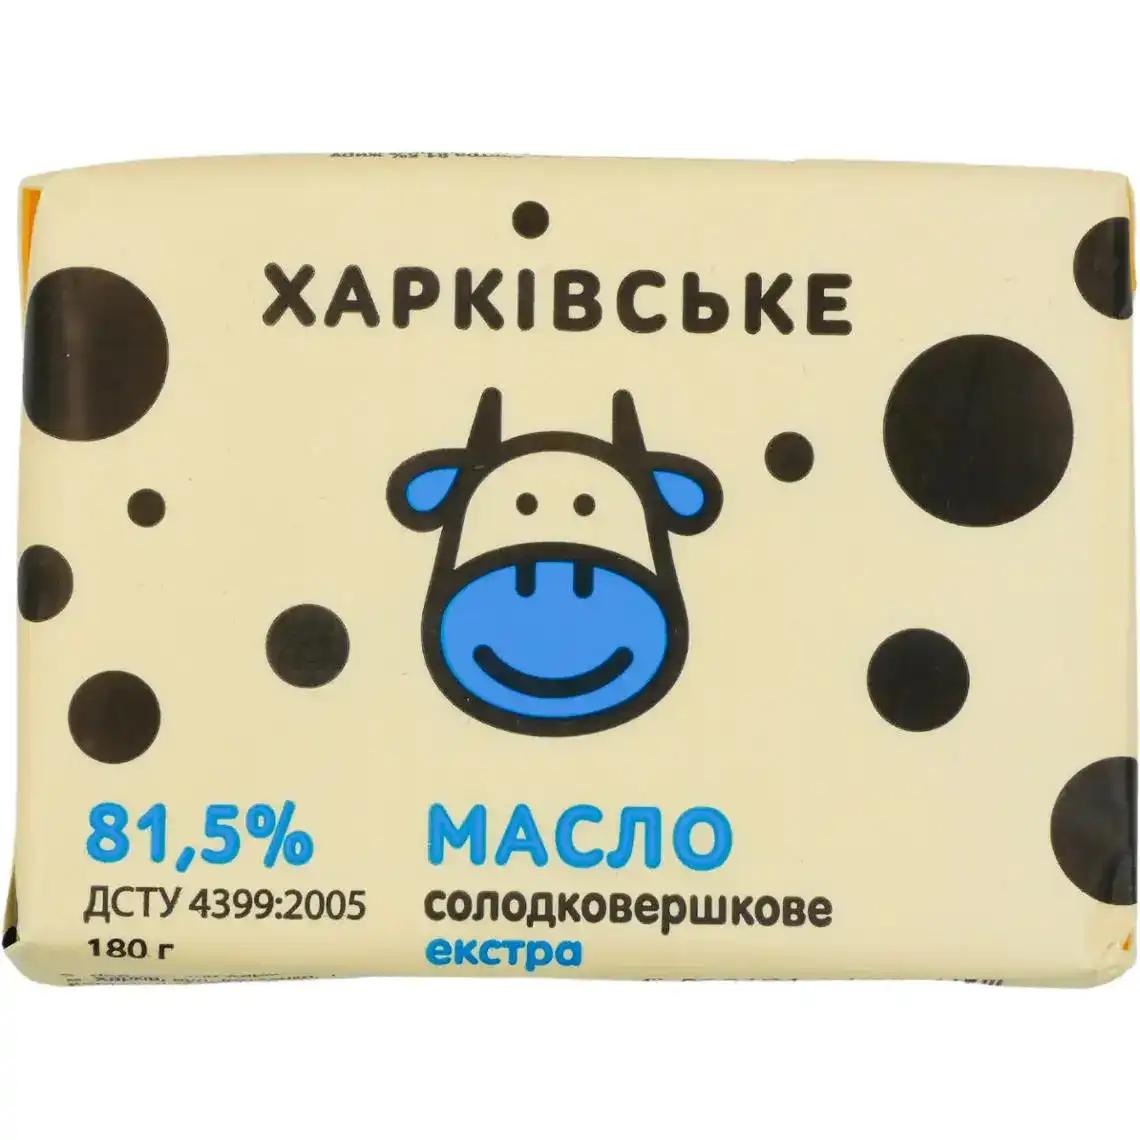 Масло Харківське солодковершкове екстра 81,5 % 200г